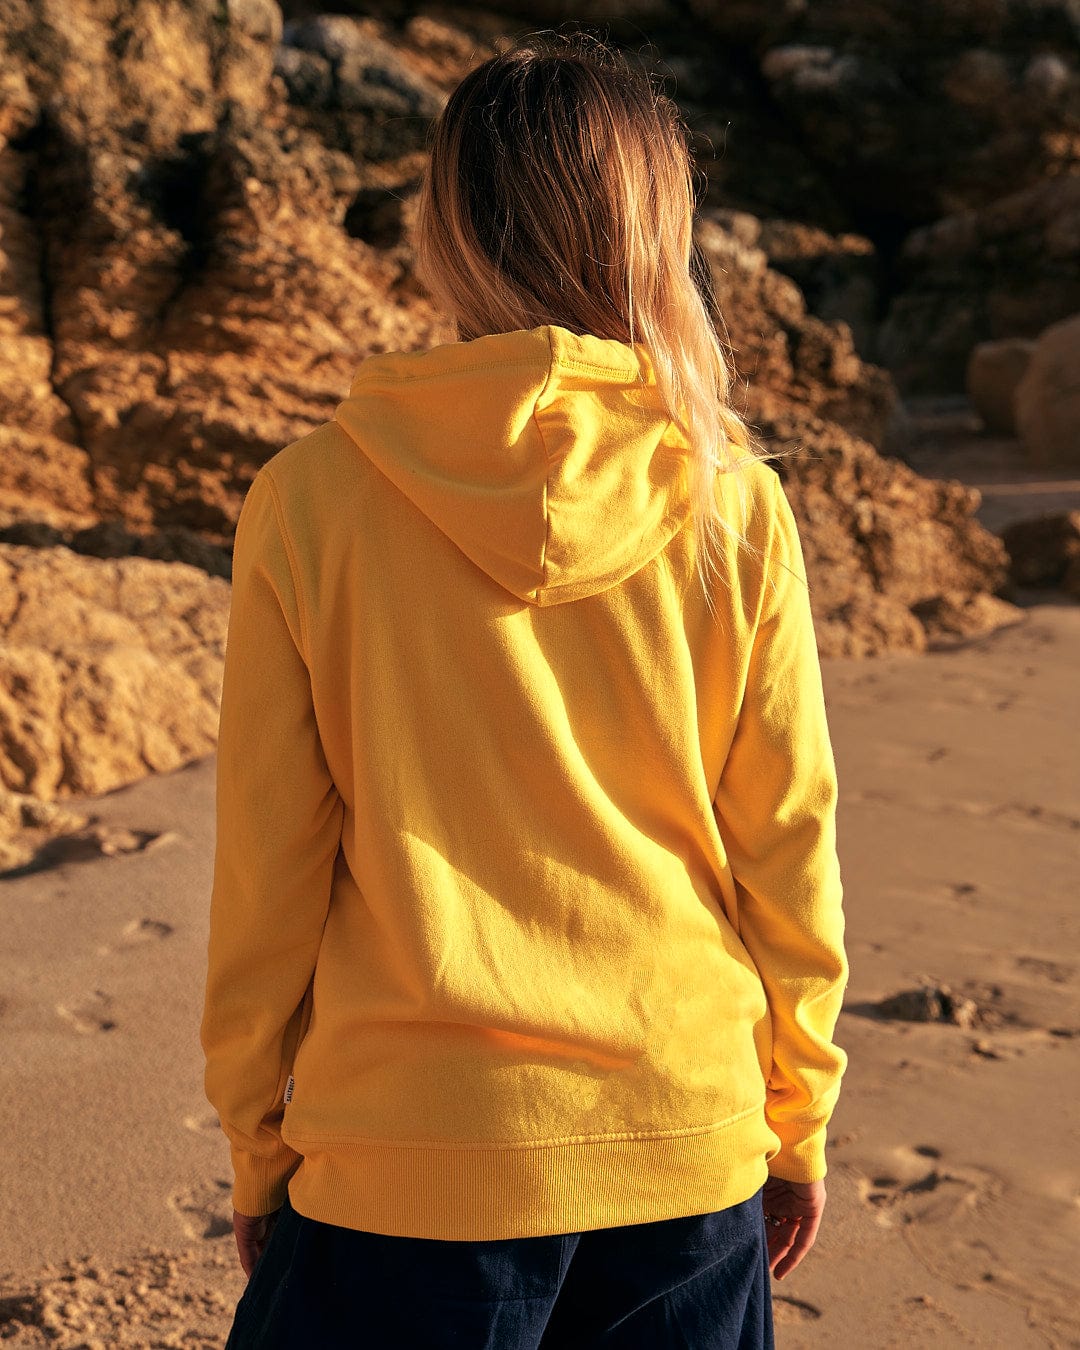 A woman wearing a Dreamseeker - Womens Pop Hoodie in yellow by Saltrock on the beach.